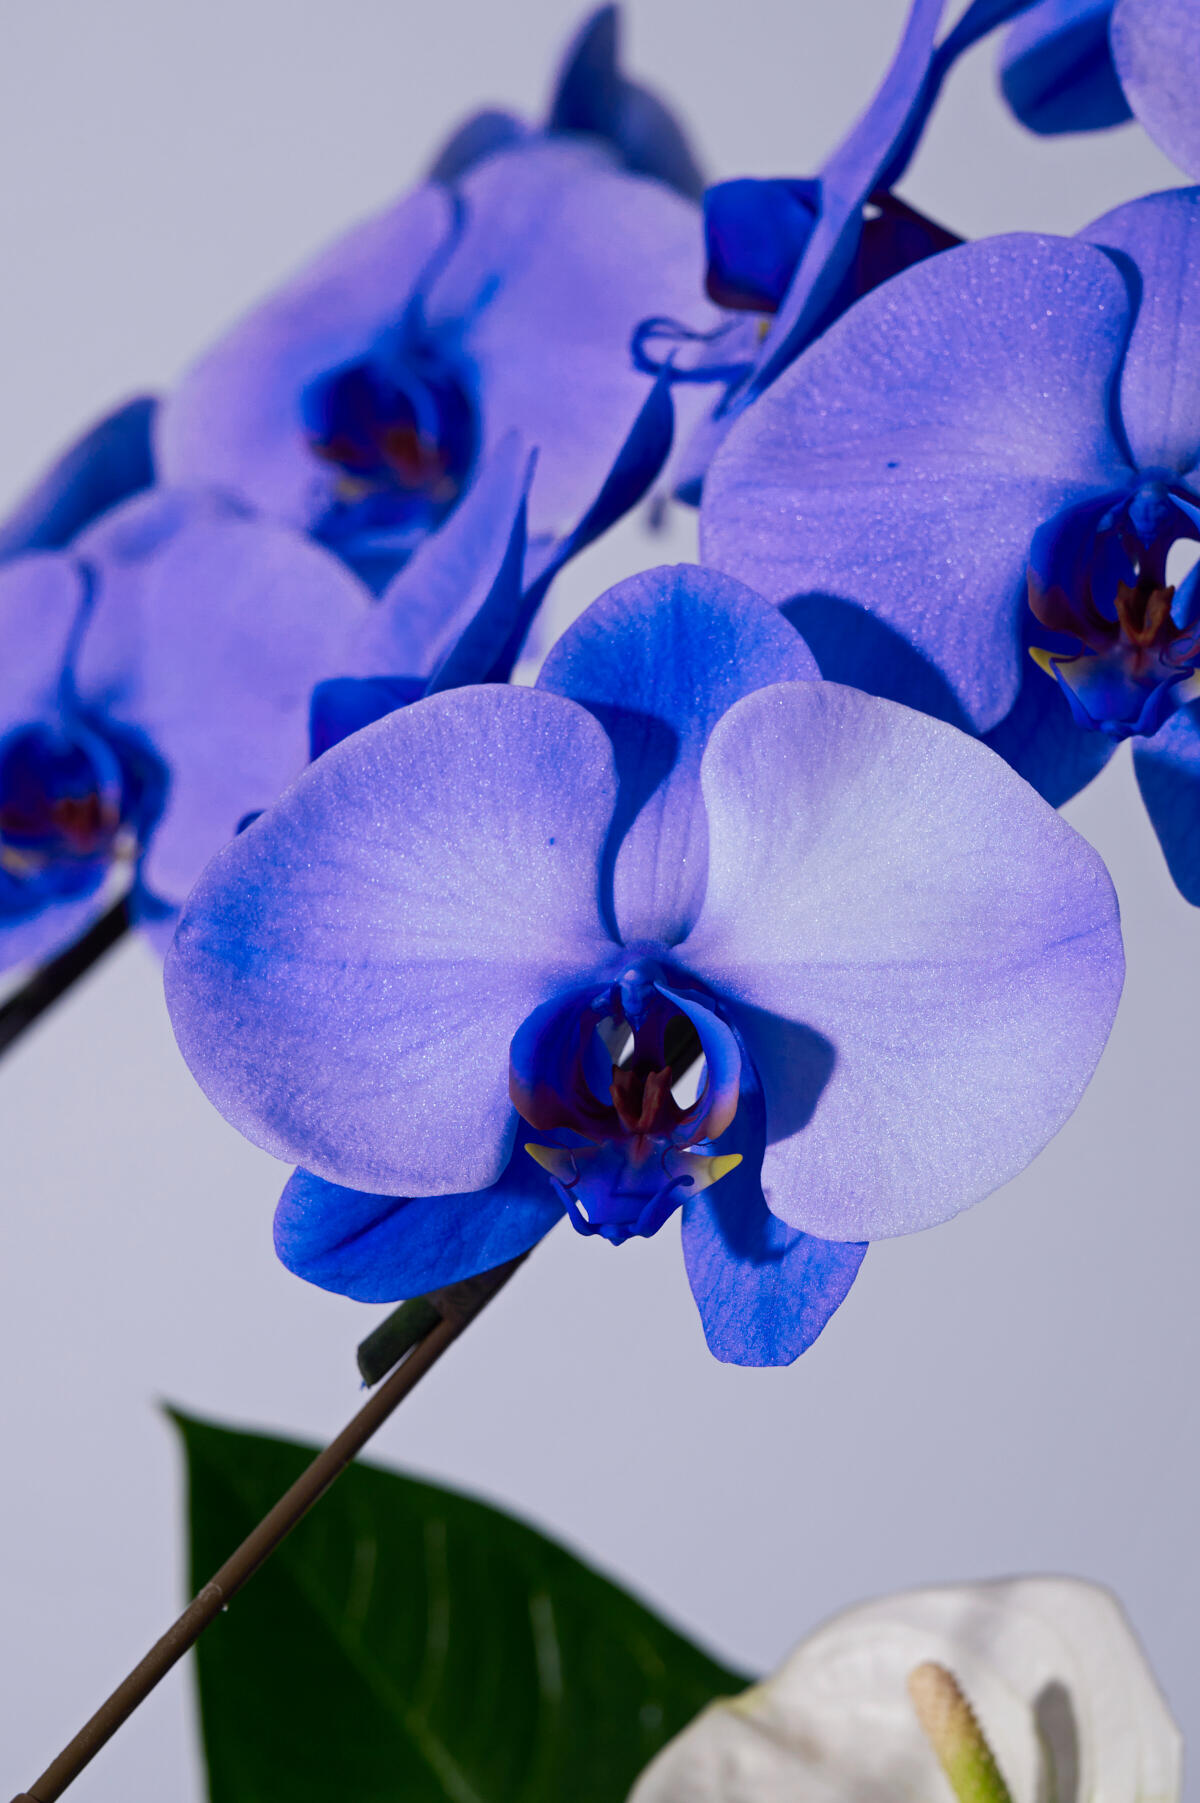 <p>契約農家よりお届けする特殊な技術を用いて青色に染められた胡蝶蘭です。自然では出せない青色に染色する事で、斬新で非常に珍しいお花となっております。</p>